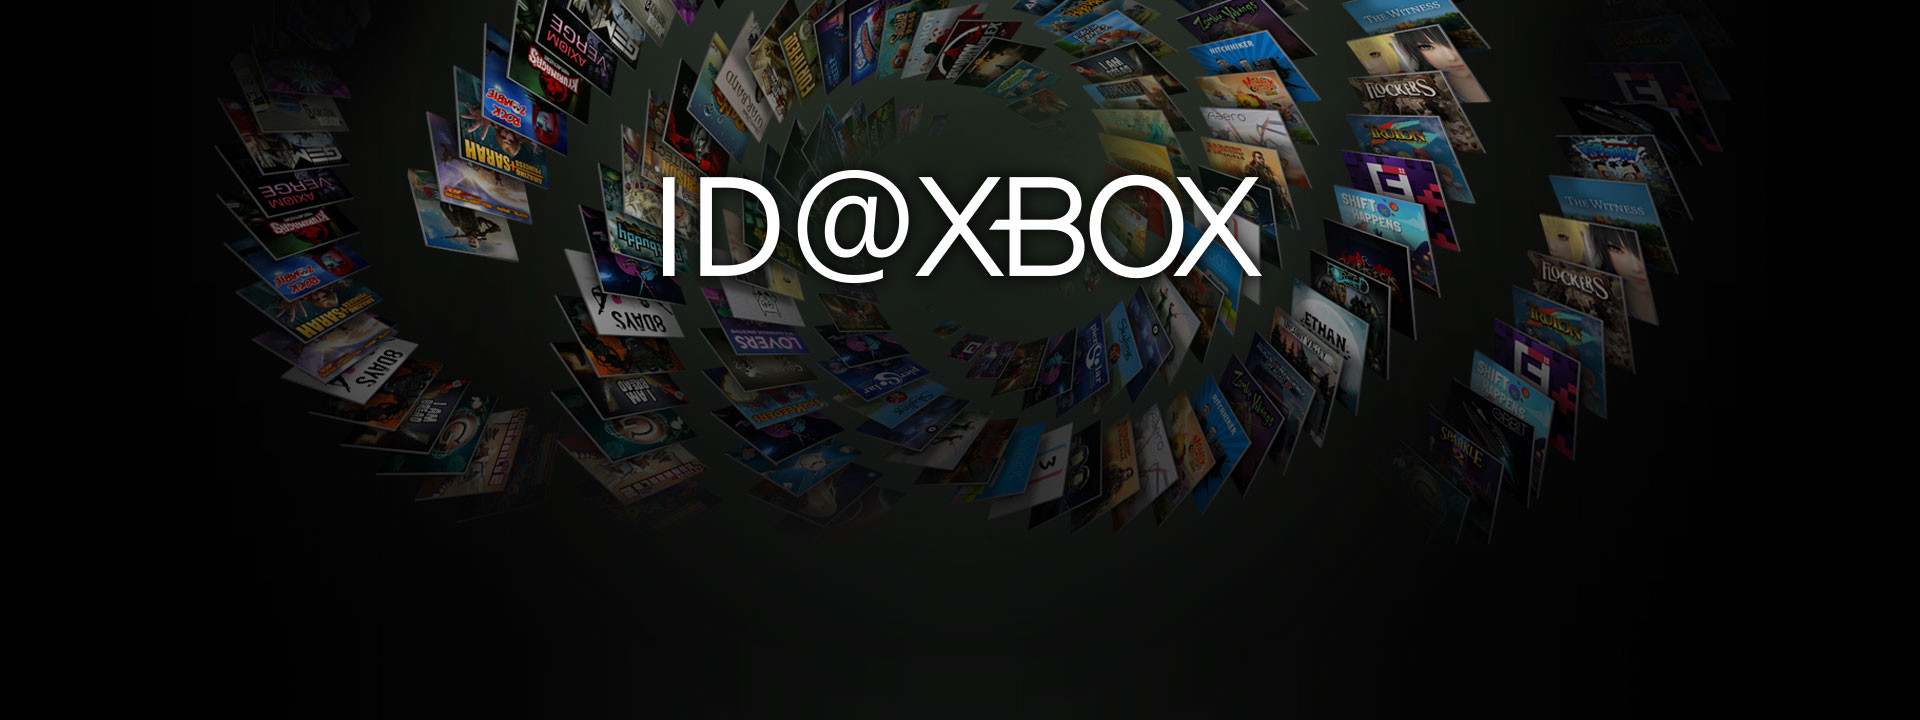 ID @Xbox 20 jeux annoncés dont 12 dans le Game Pass